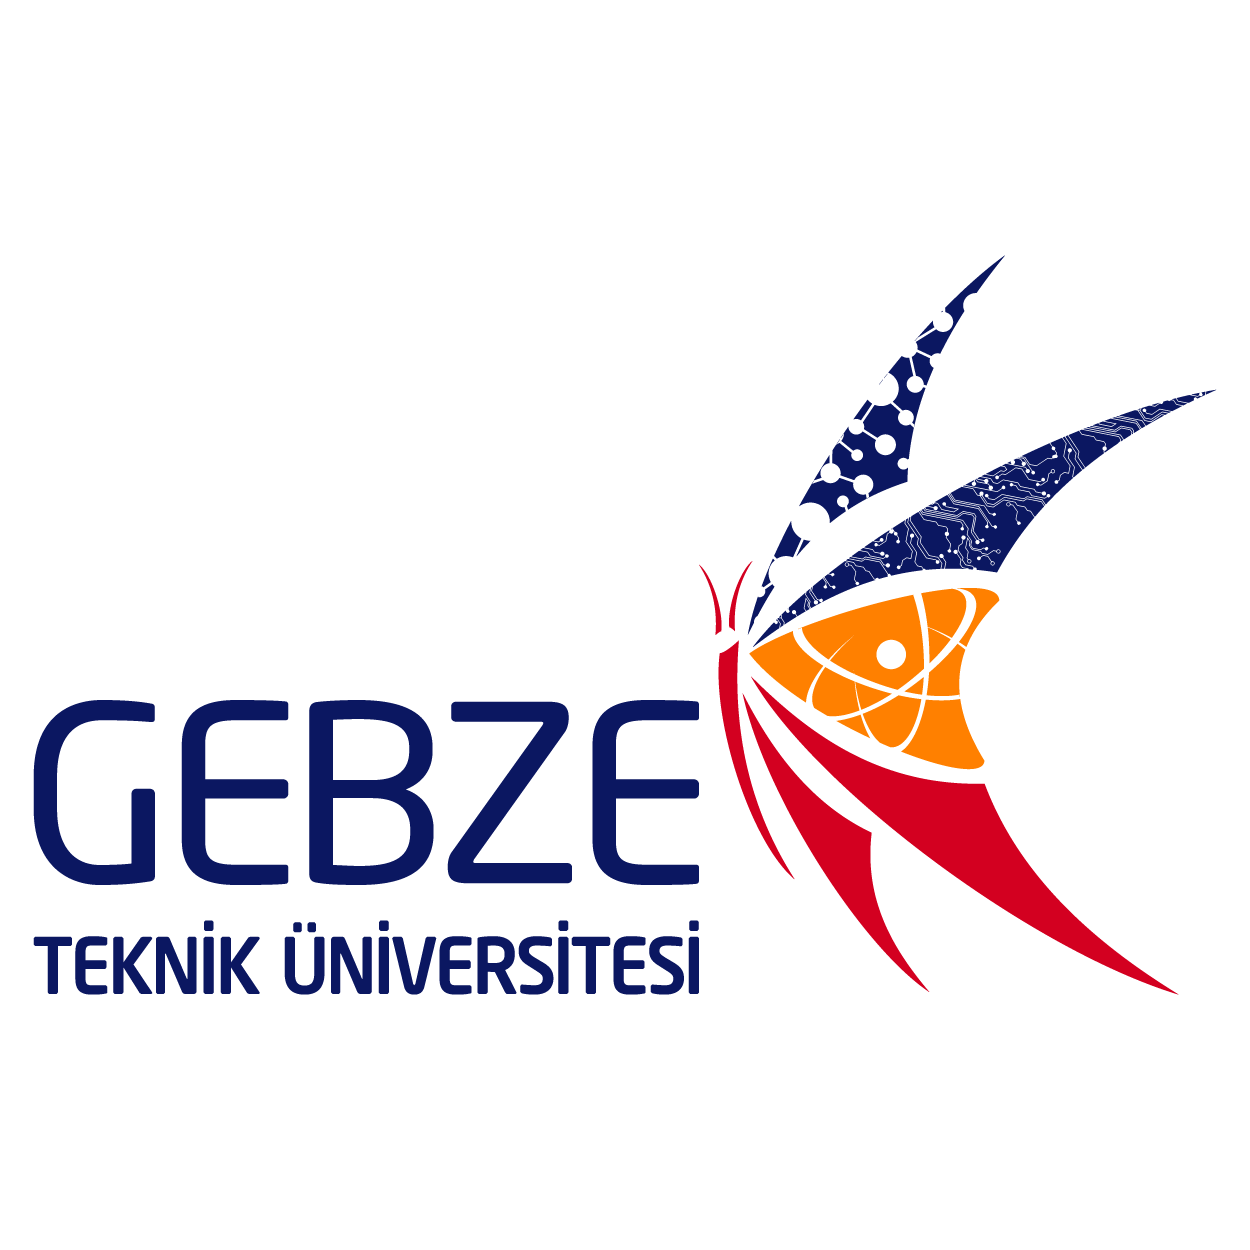 Gebze Teknik Üniversitesi Logo (Kocaeli) png